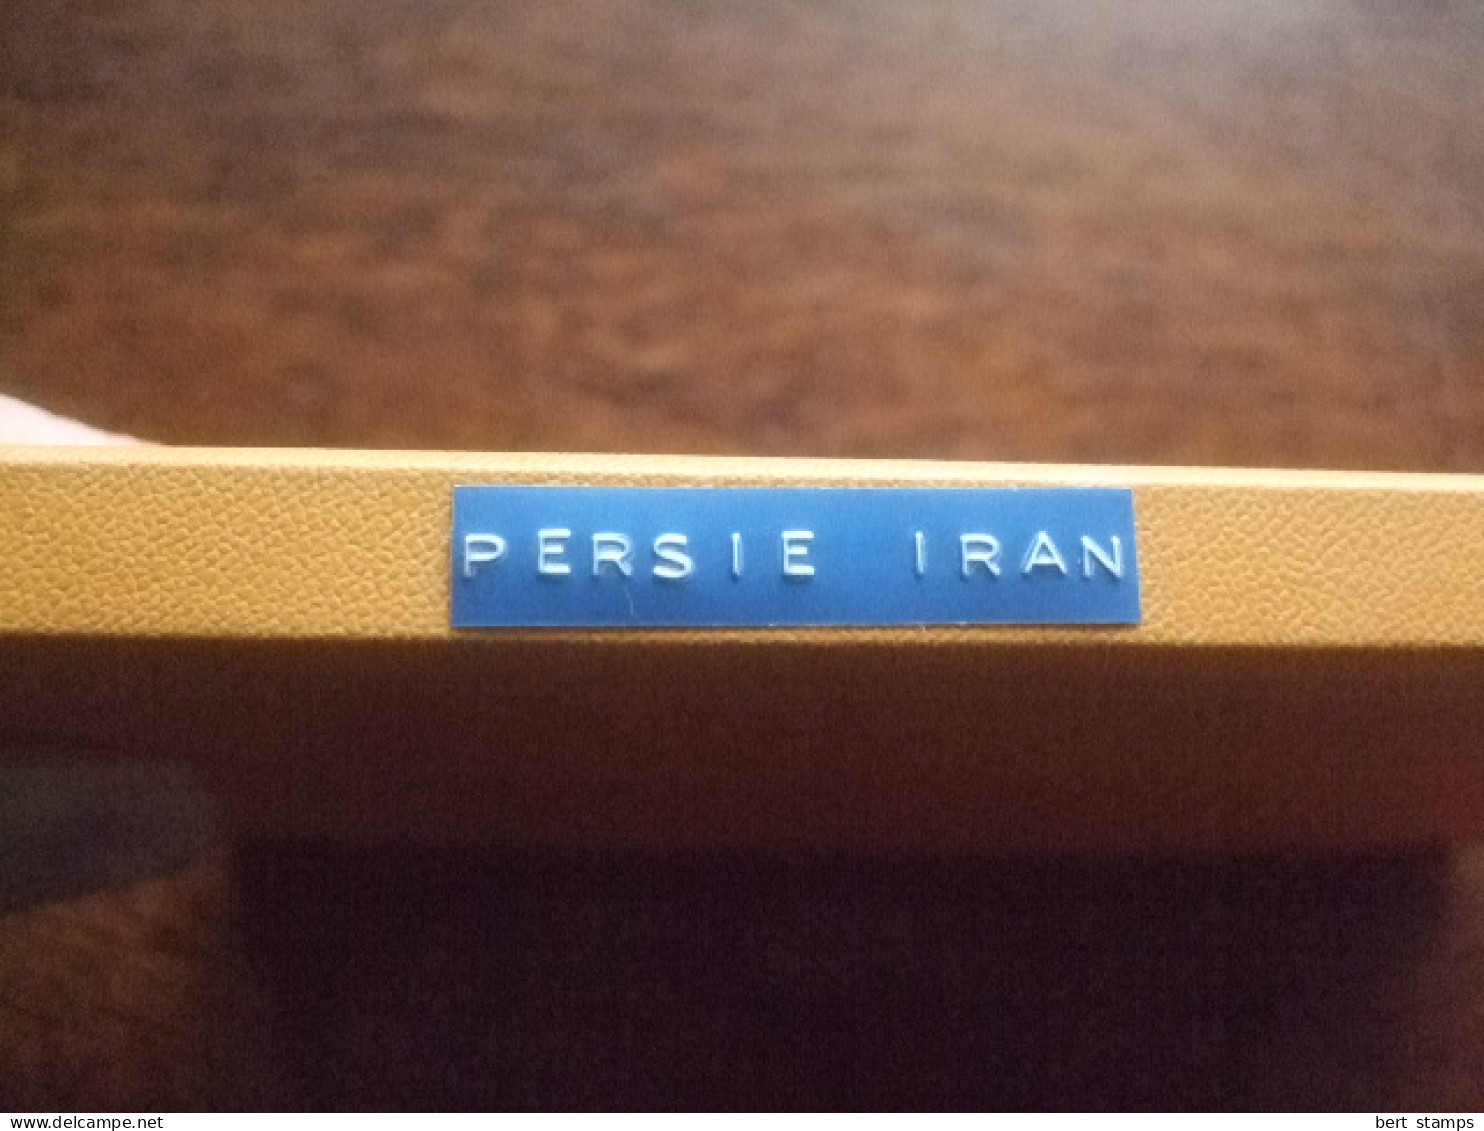 Persia and IRAN in little  stockbook